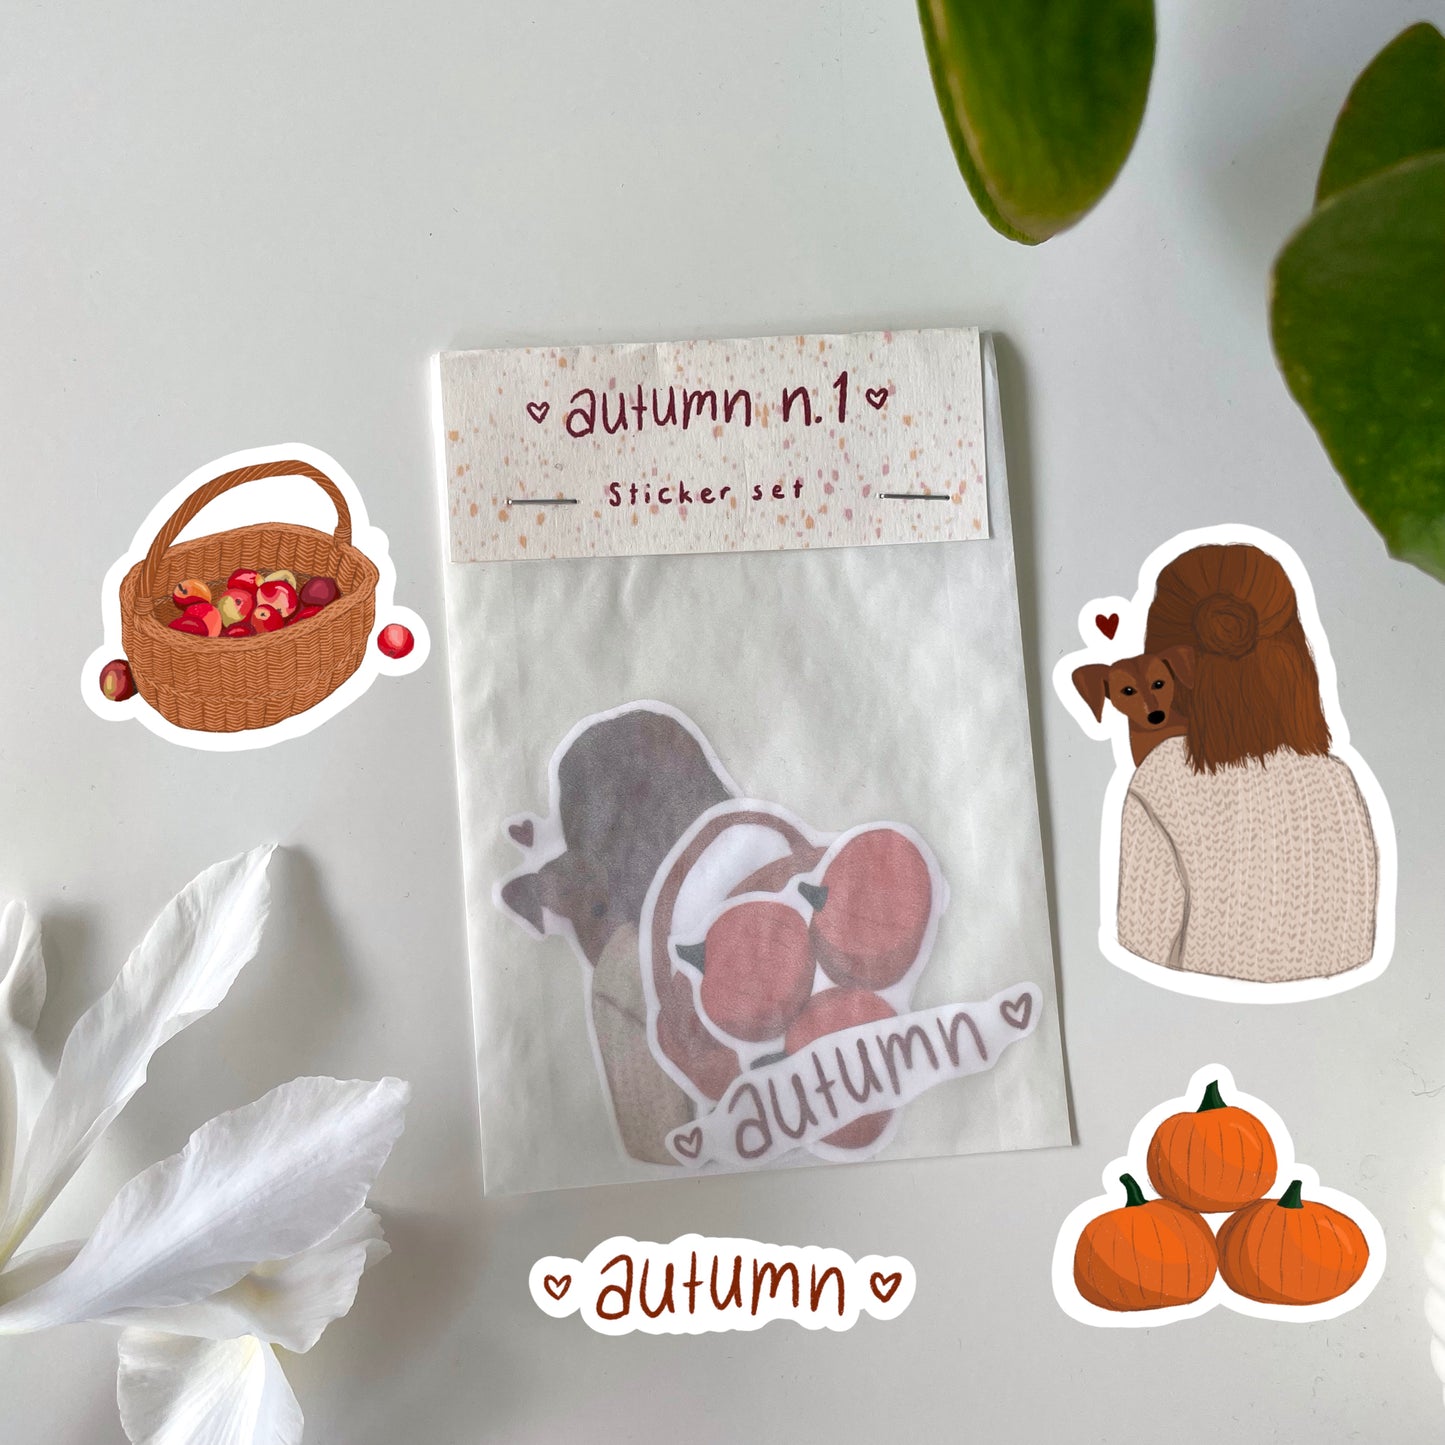 autumn n.1 sticker set (4 pieces)